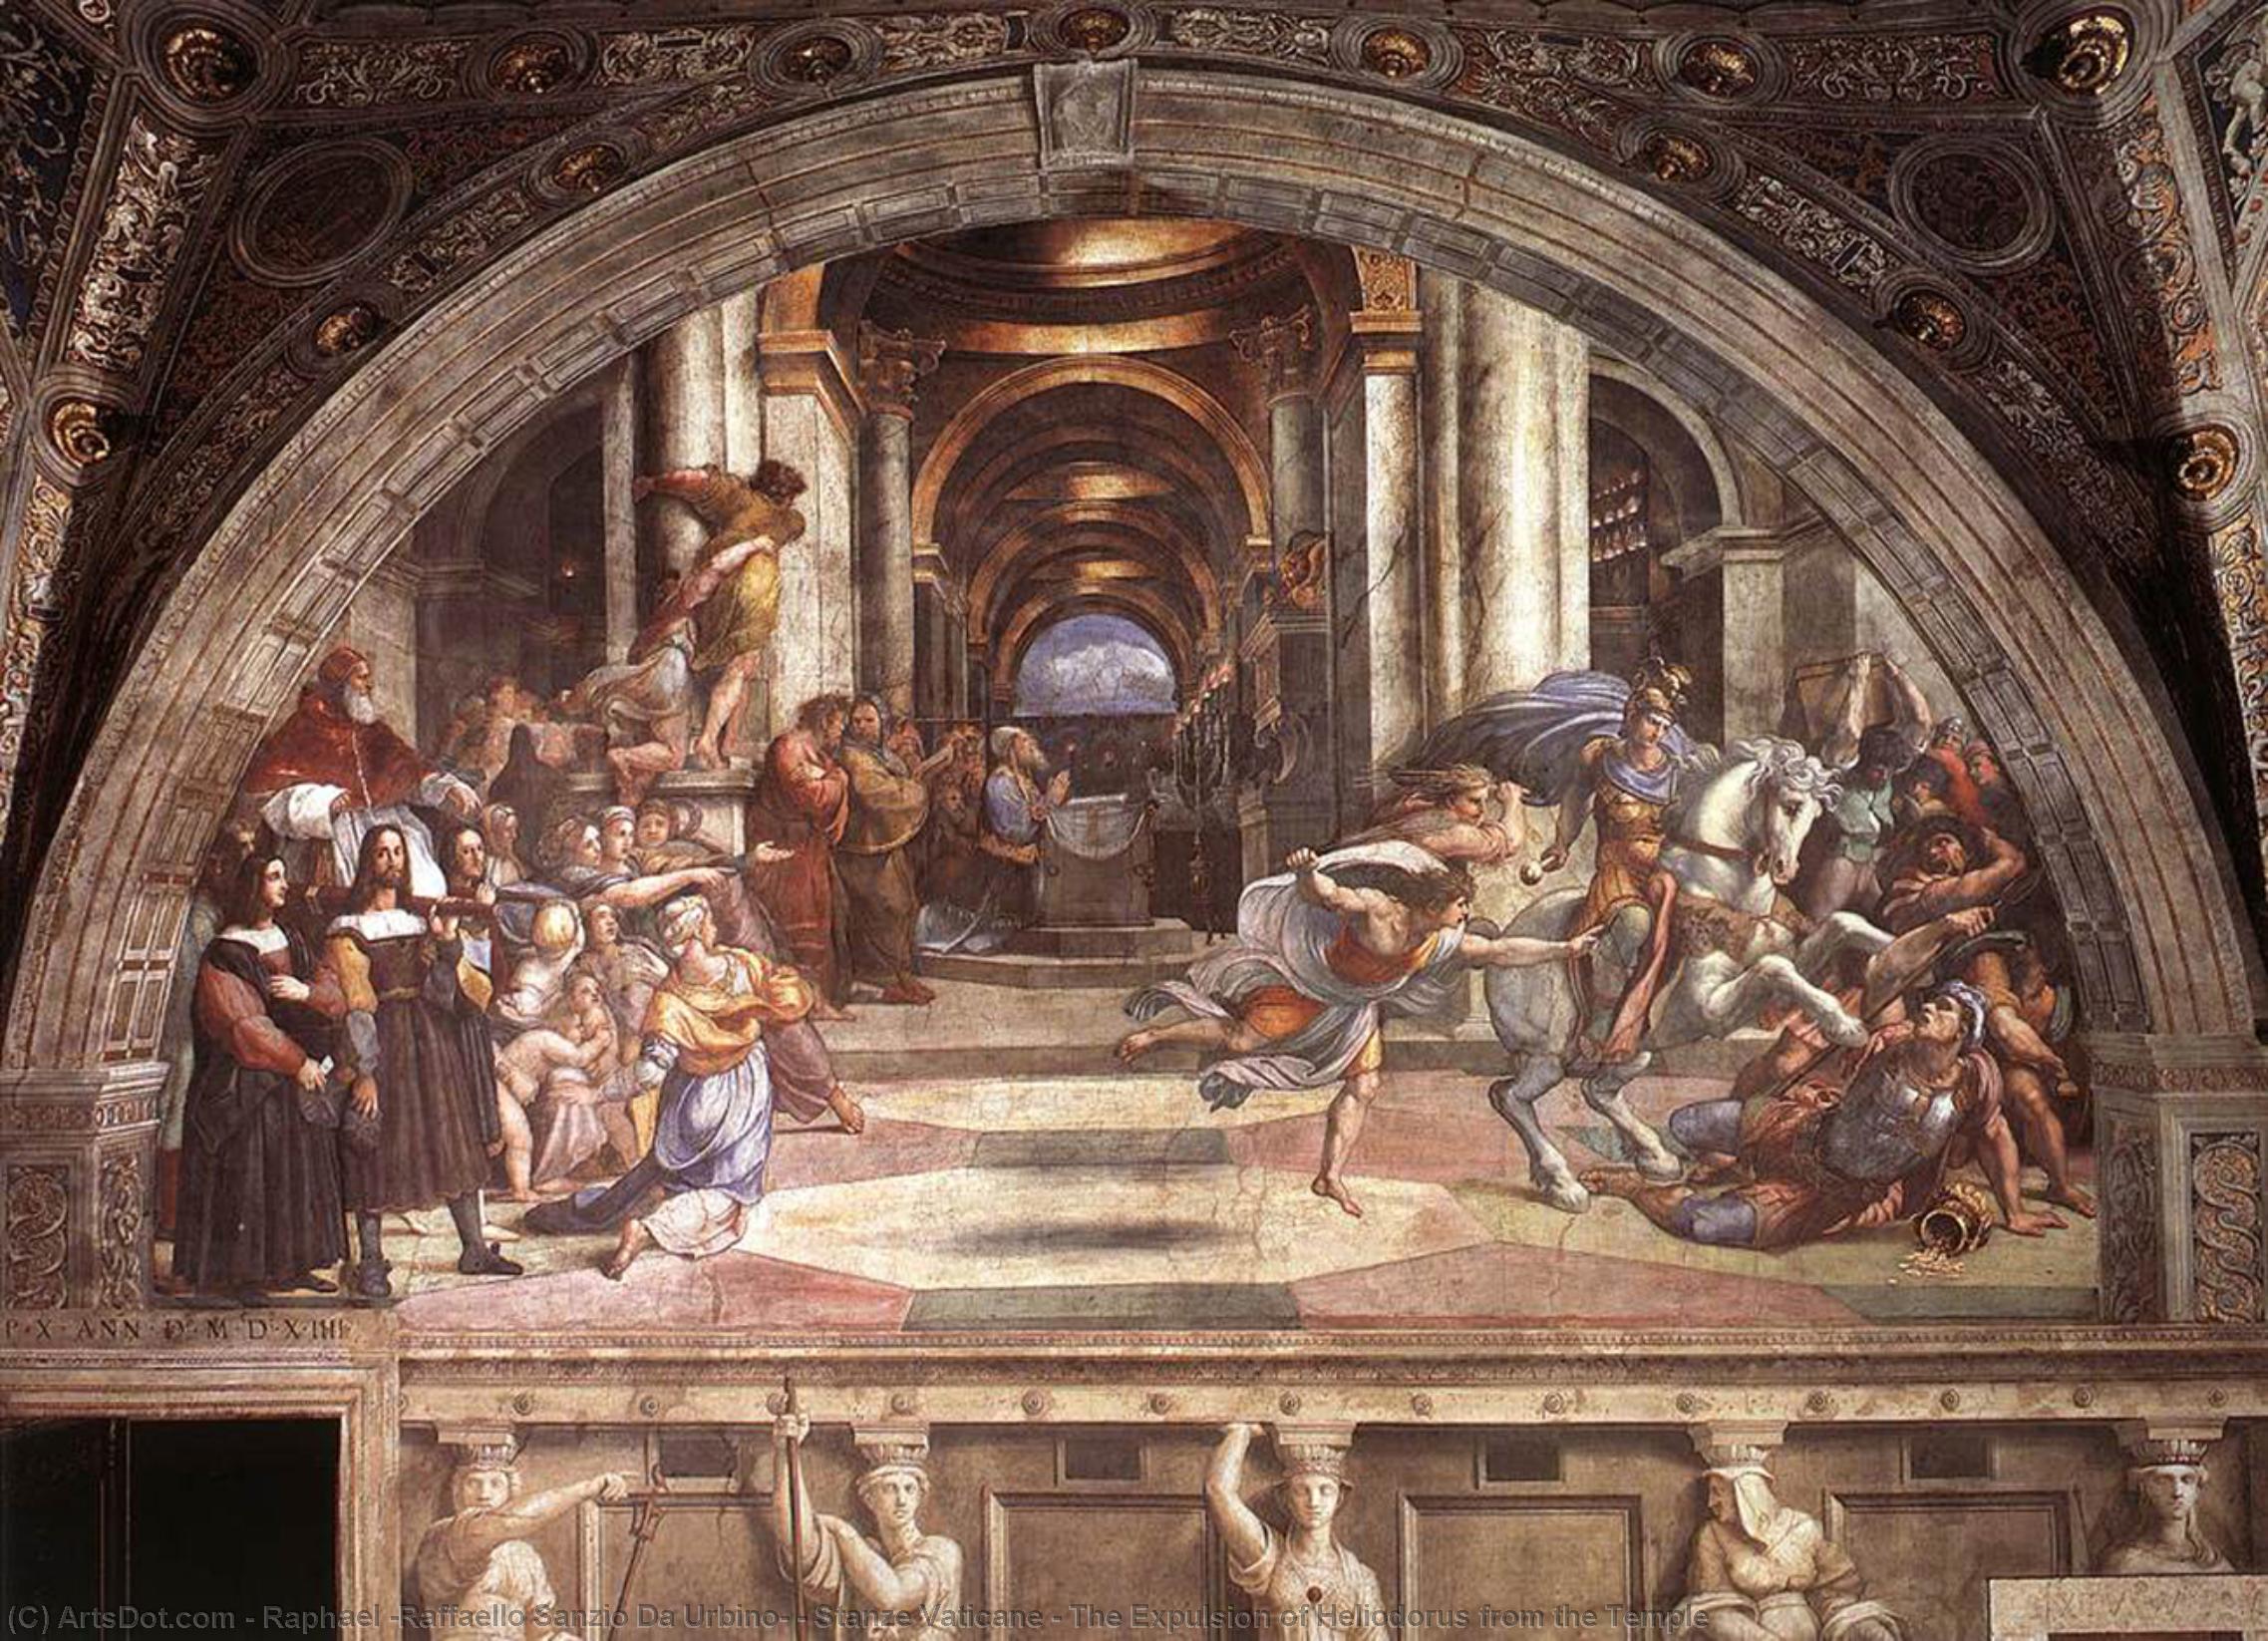 WikiOO.org - Encyclopedia of Fine Arts - Maleri, Artwork Raphael (Raffaello Sanzio Da Urbino) - Stanze Vaticane - The Expulsion of Heliodorus from the Temple